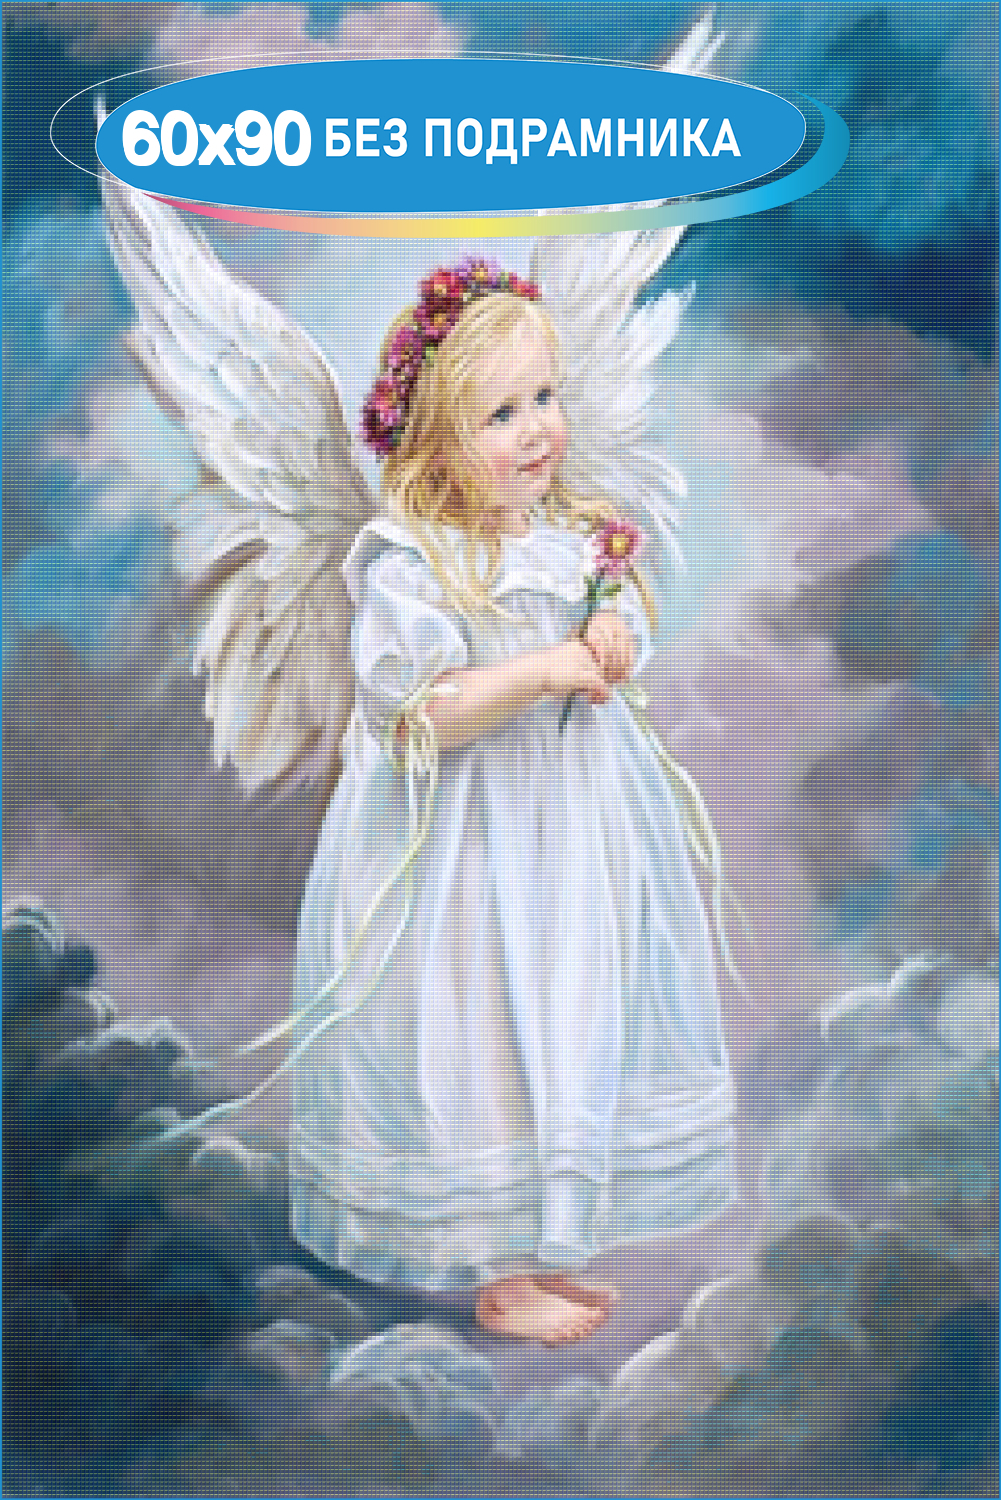 Картинки angel